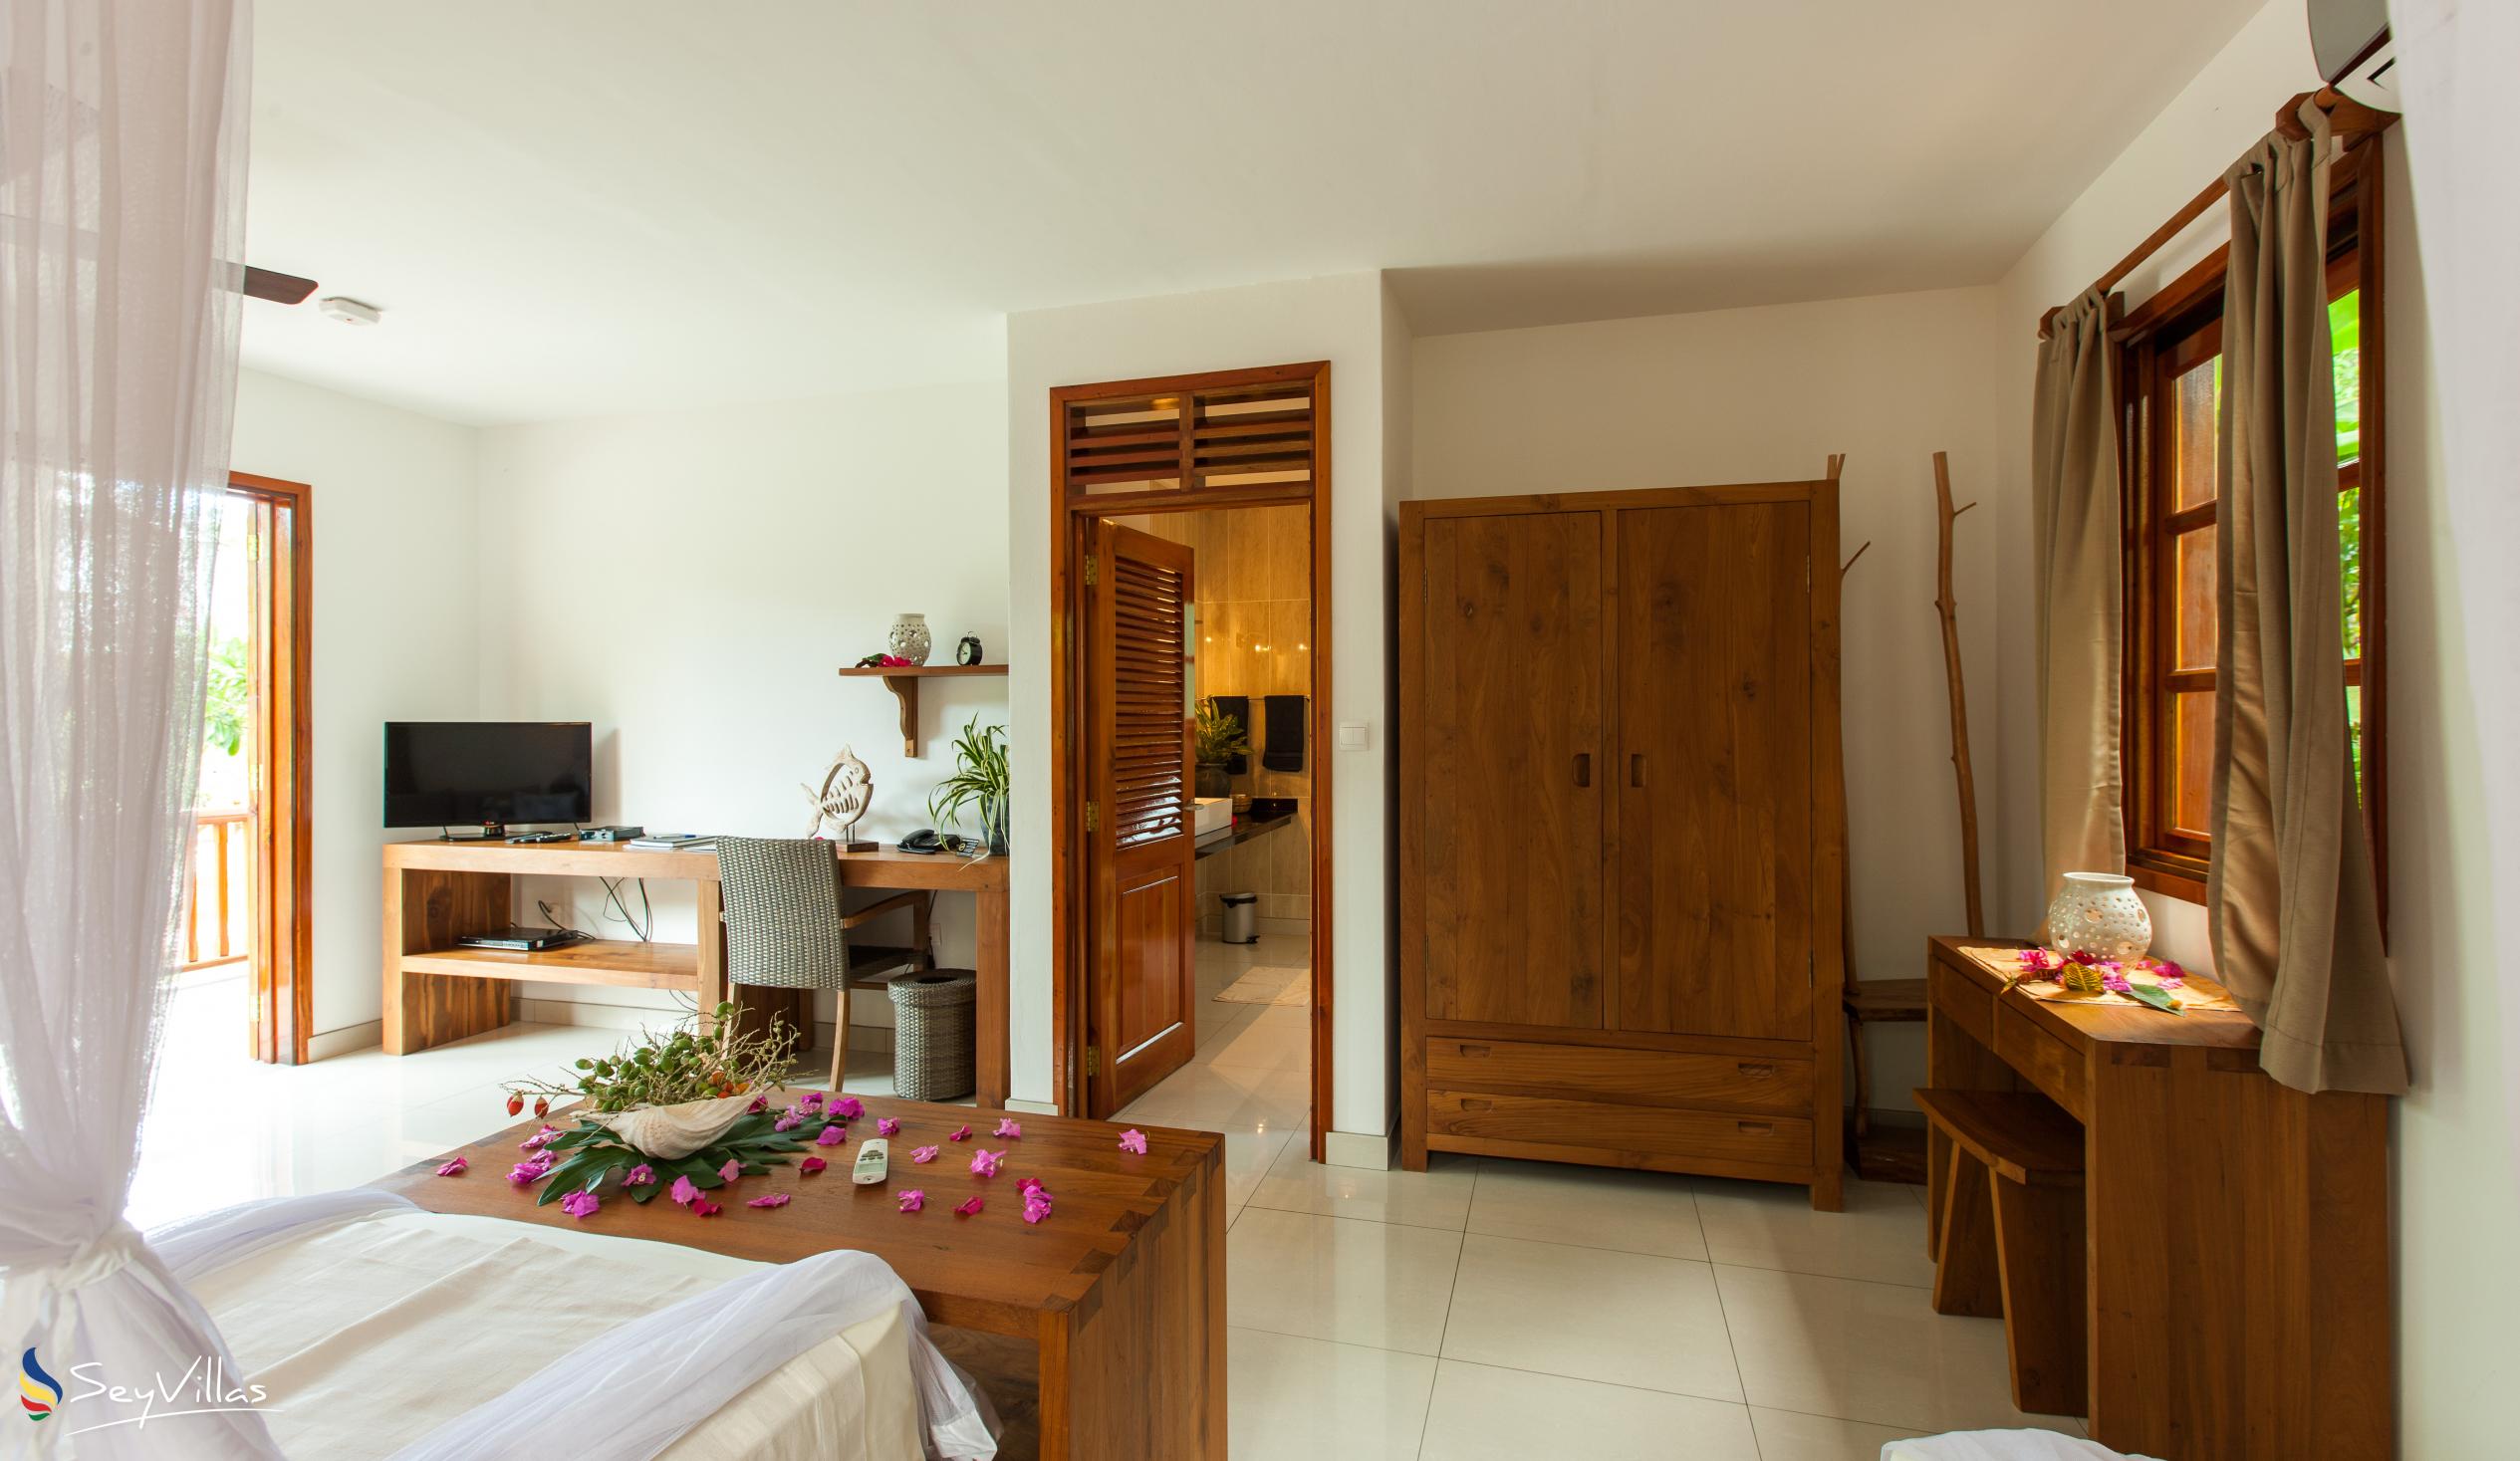 Photo 53: Domaine Les Rochers - First-Floor Luxury Apartment Kaz Rochers - La Digue (Seychelles)